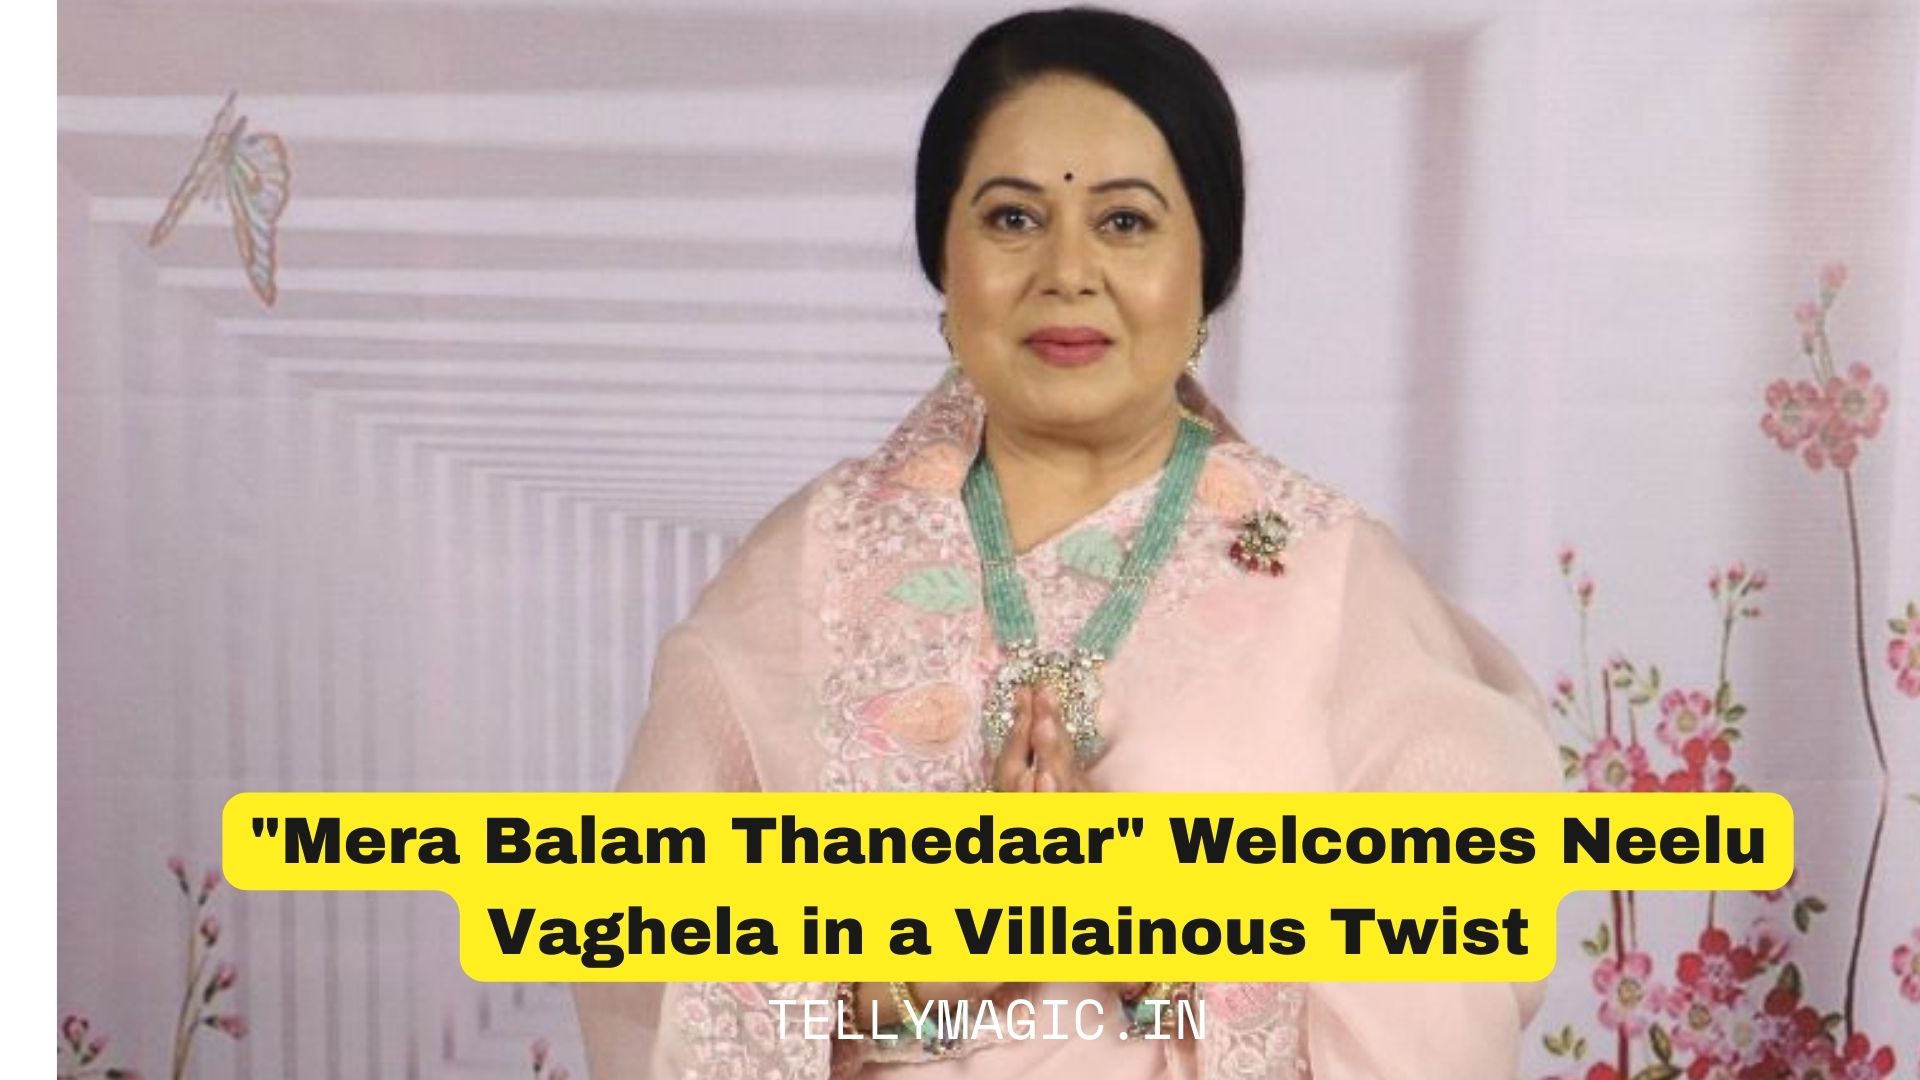 Mera Balam Thanedaar” Welcomes Neelu Vaghela in a Villainous Twist